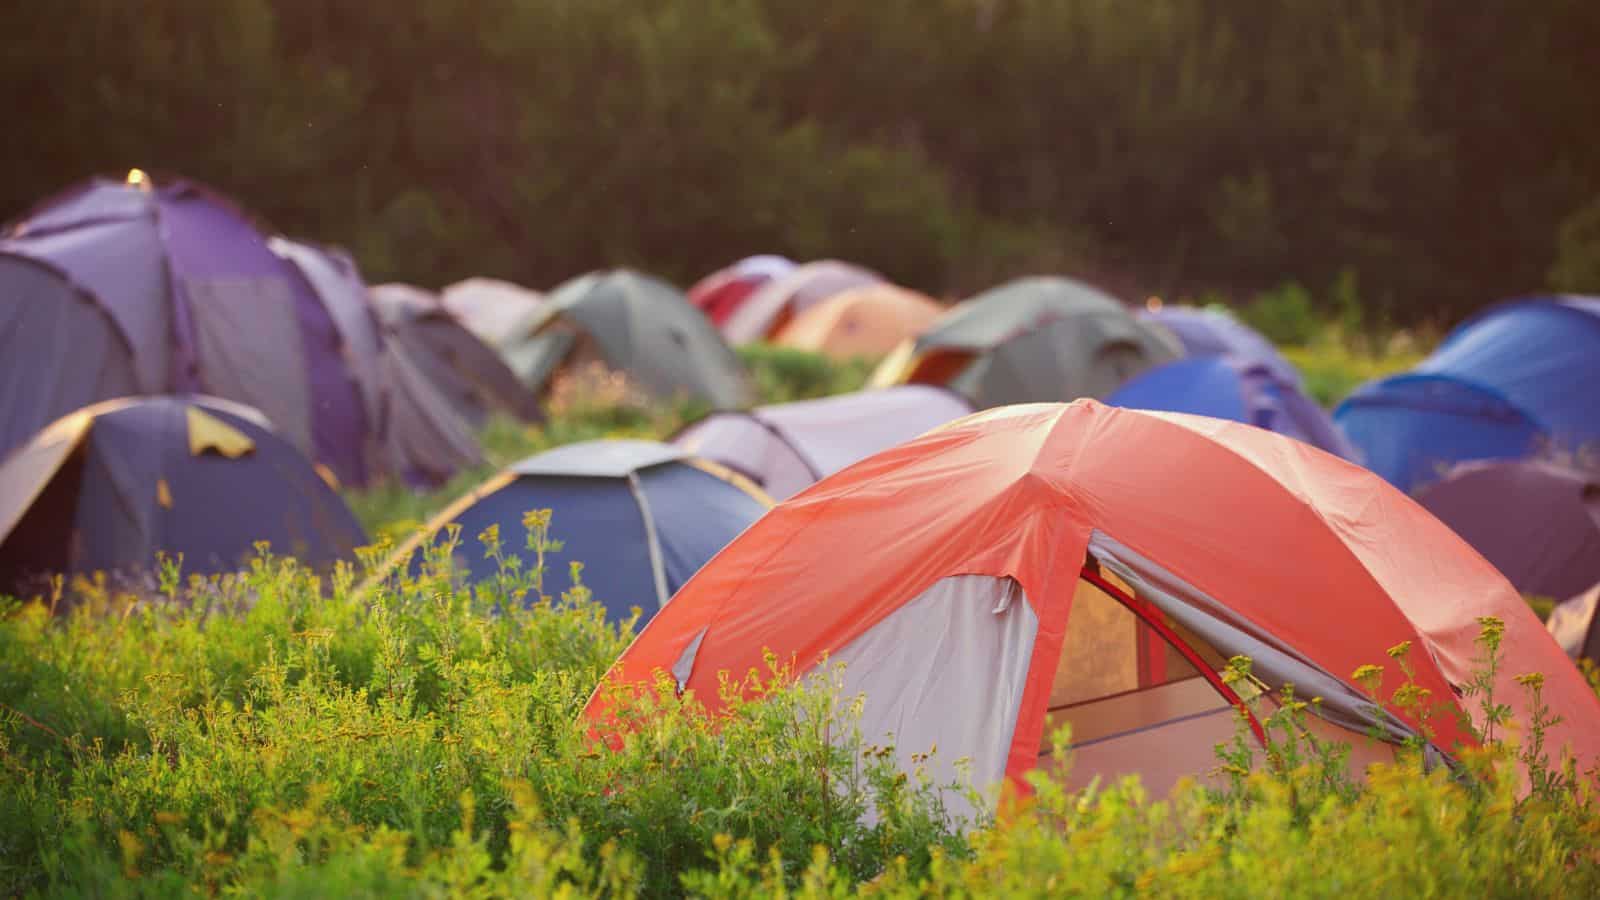 Tents at a festival